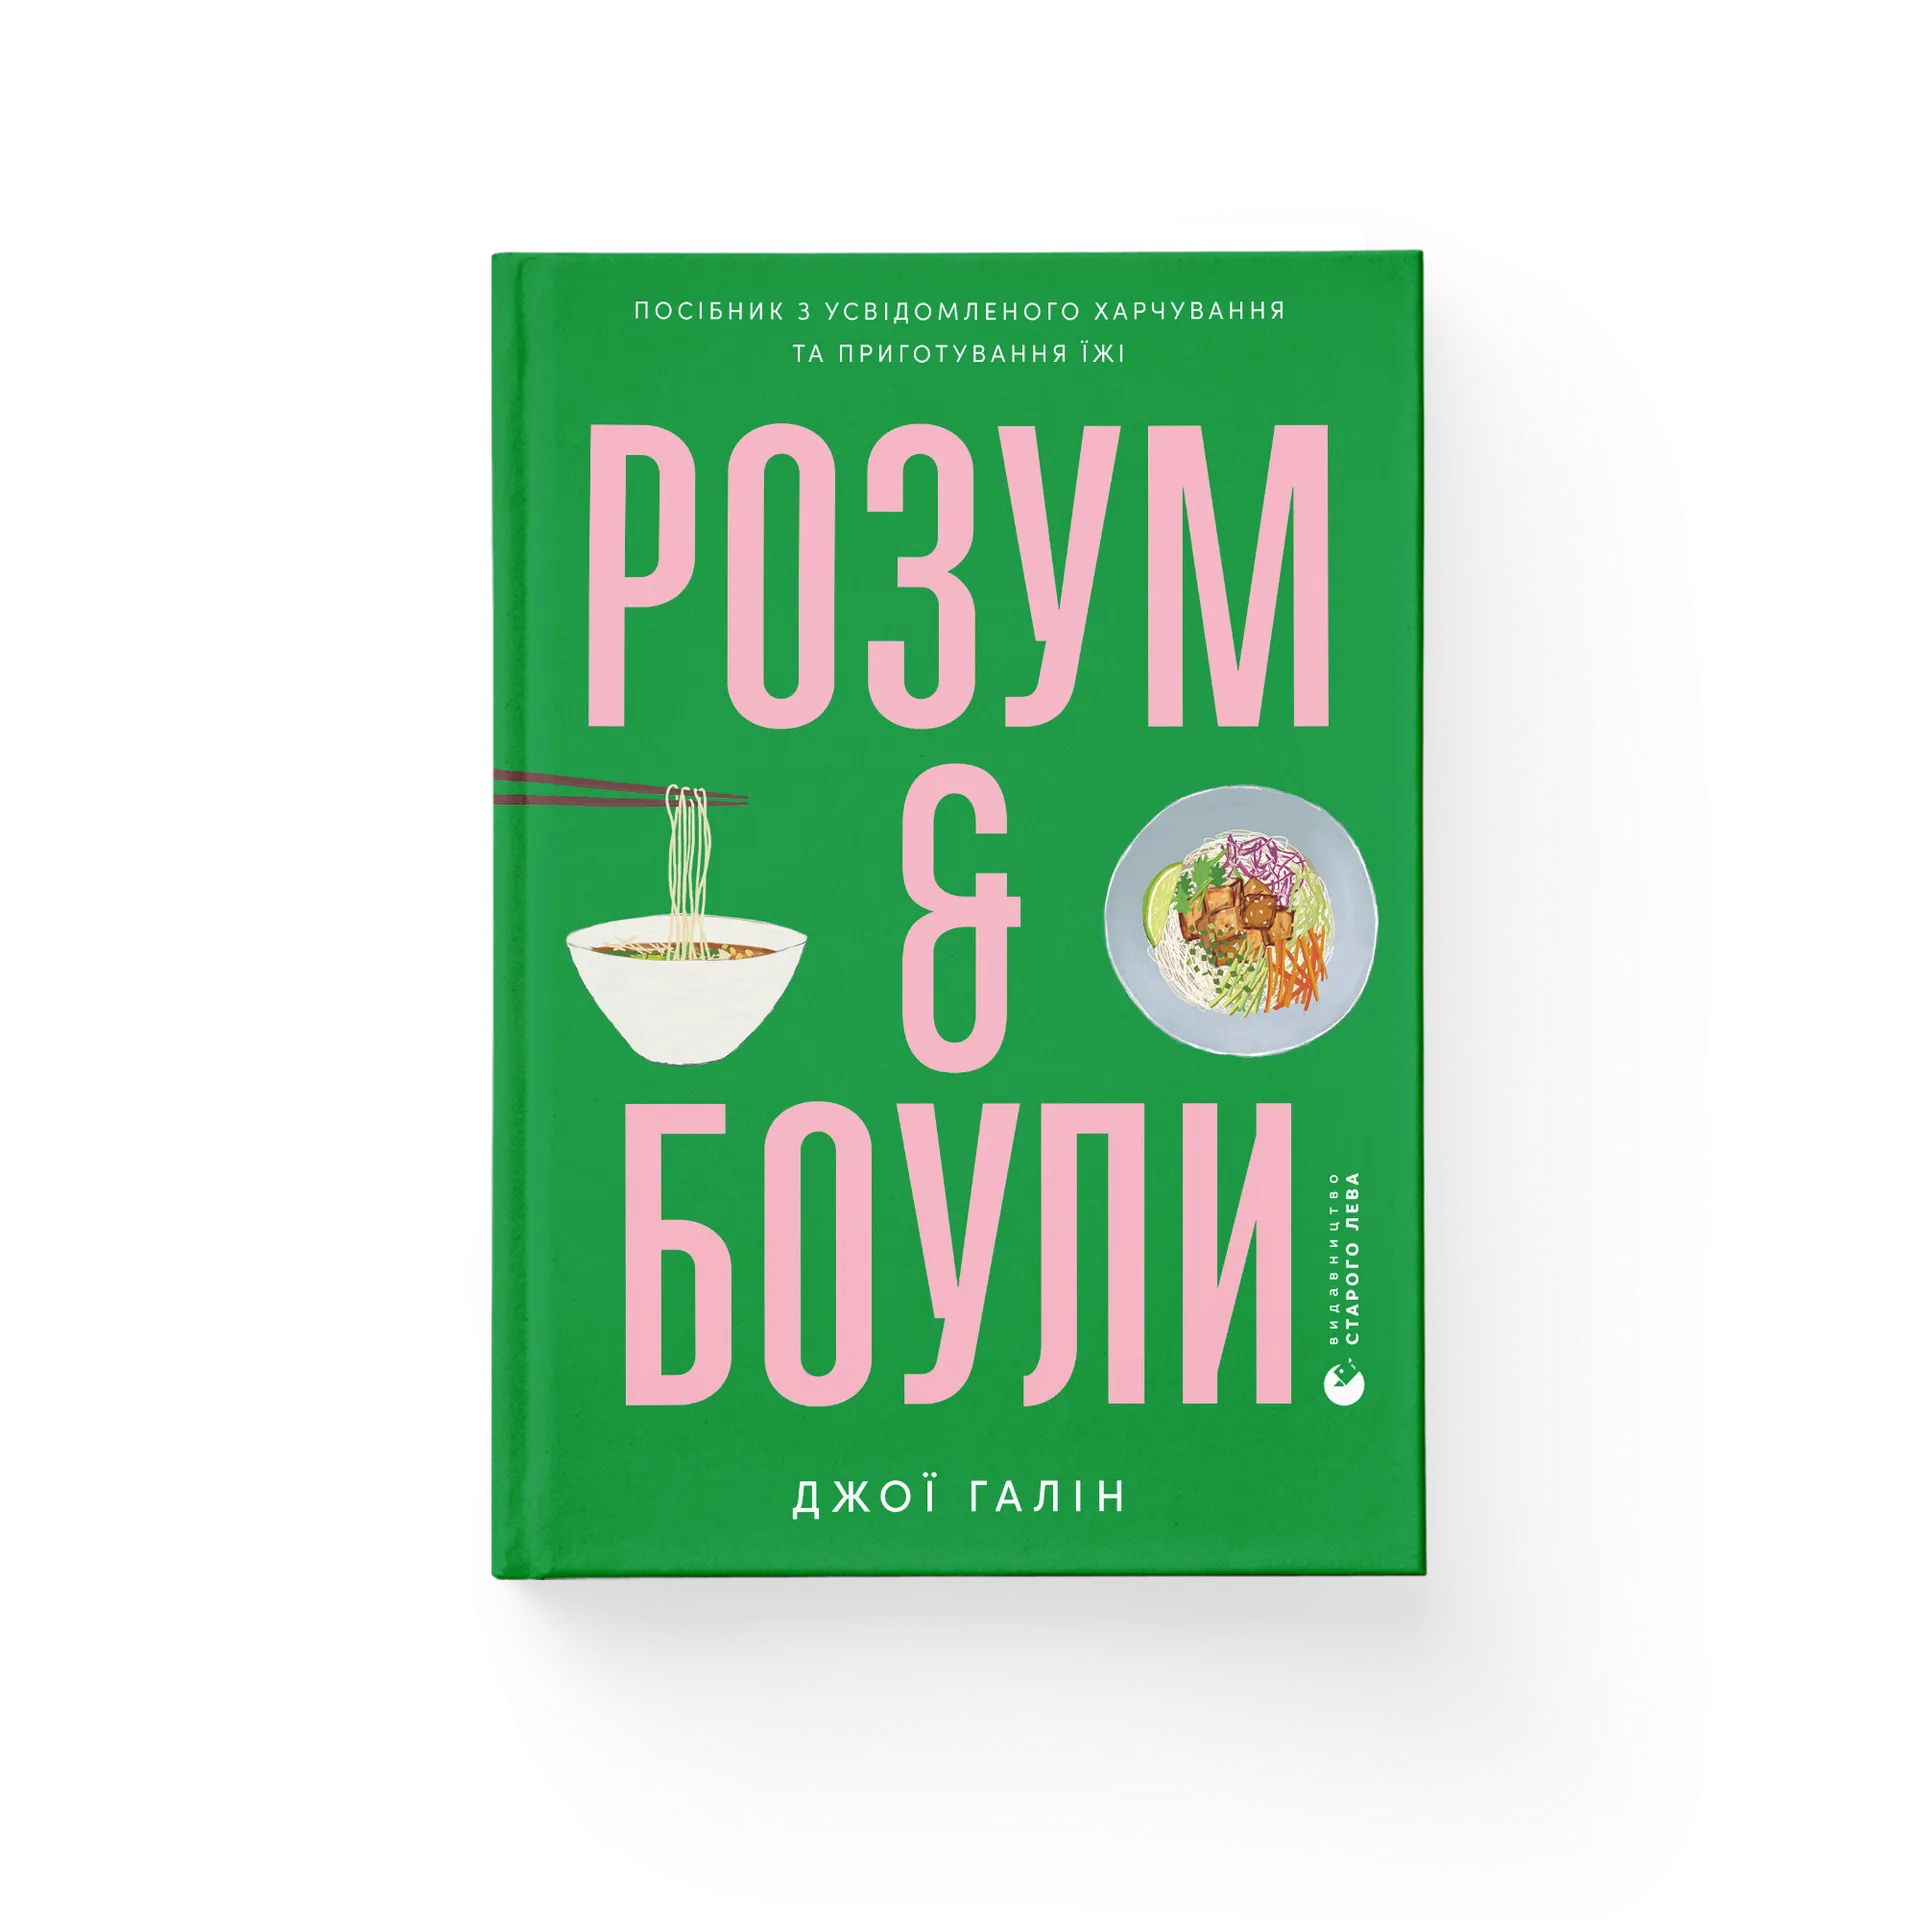 Розум & боули: посібник із свідомого харчування та приготування їжі